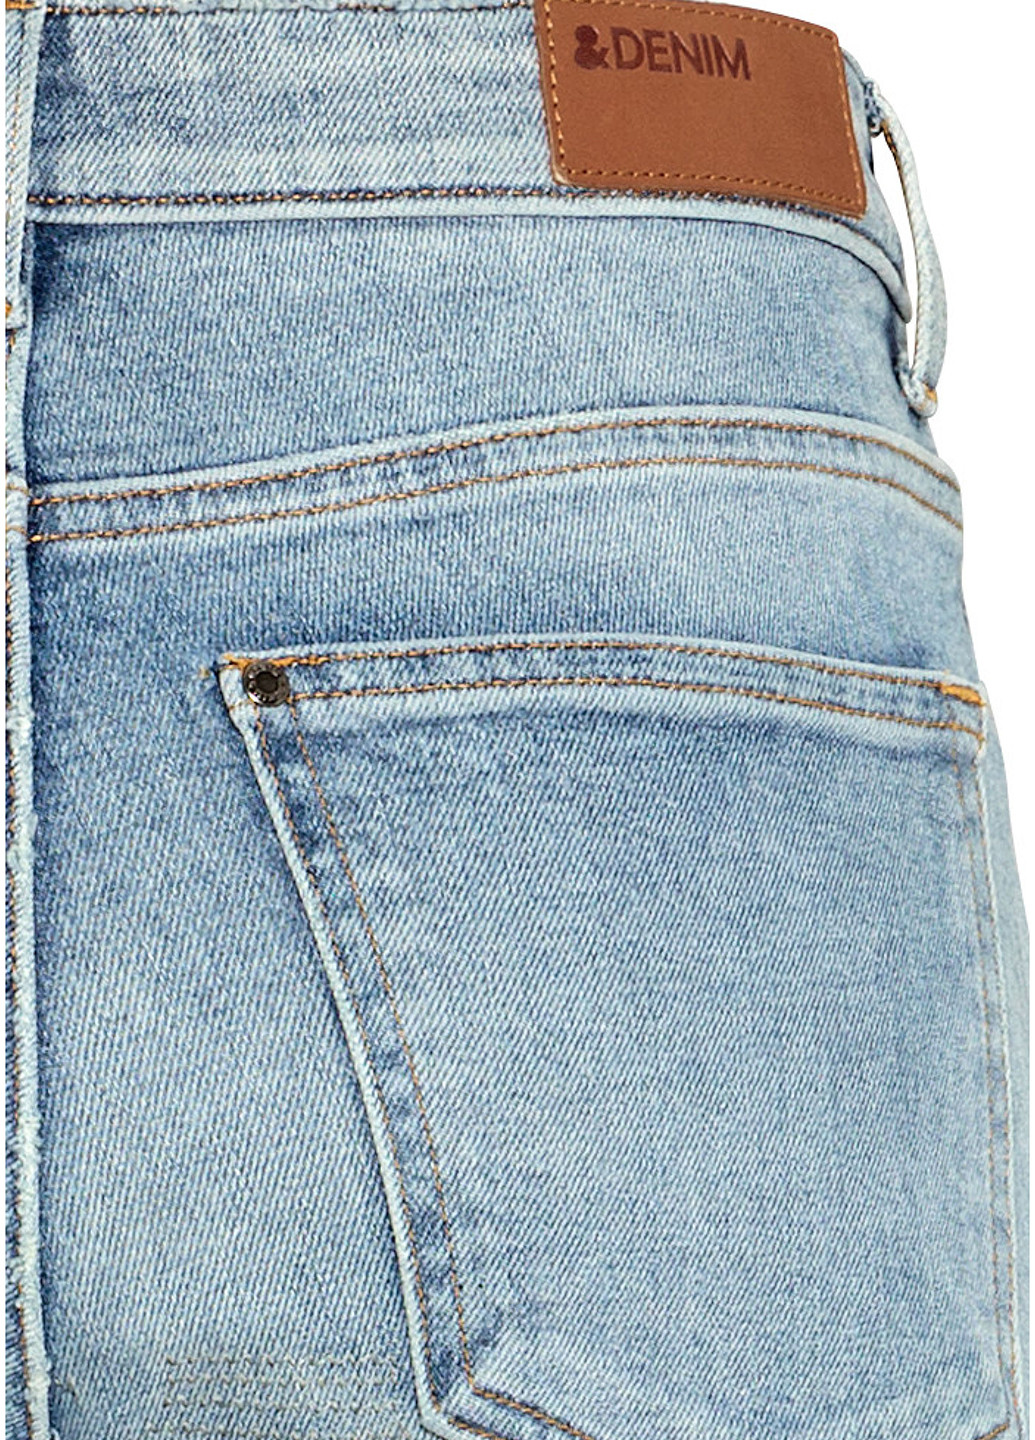 Глиняные демисезонные зауженные джинсы H&M